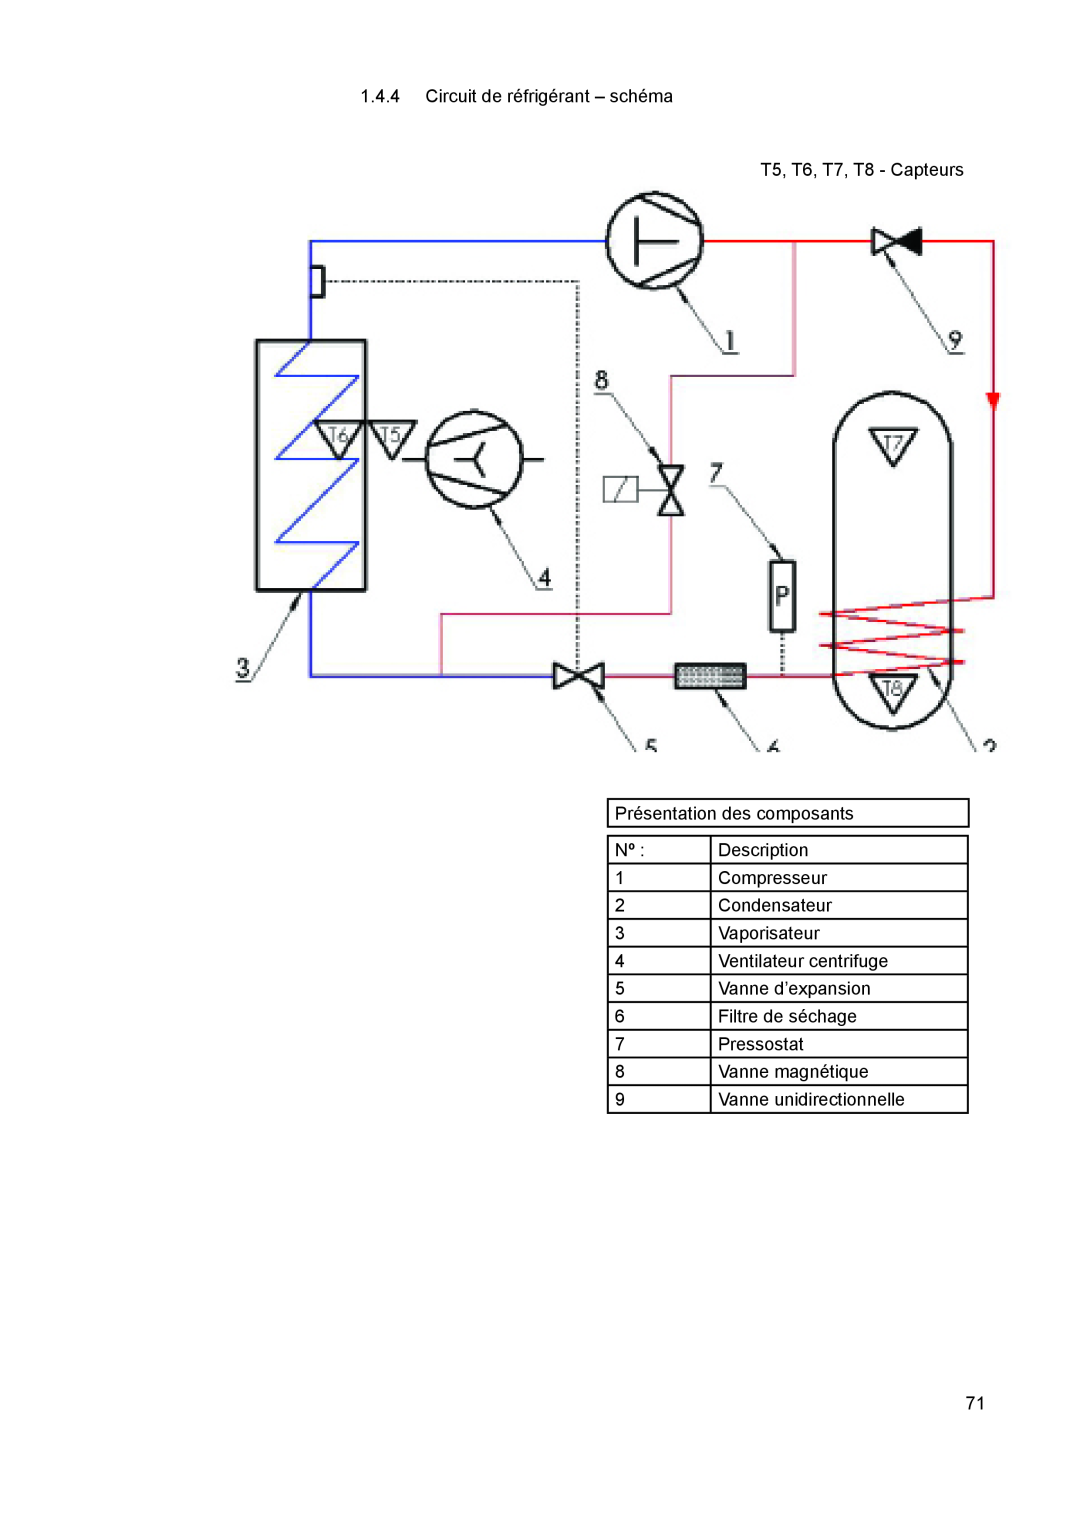 A.O. Smith 290 1.4.4Circuit de réfrigérant - schéma, T5, T6, T7, T8 - Capteurs, Présentation des composants, Description 